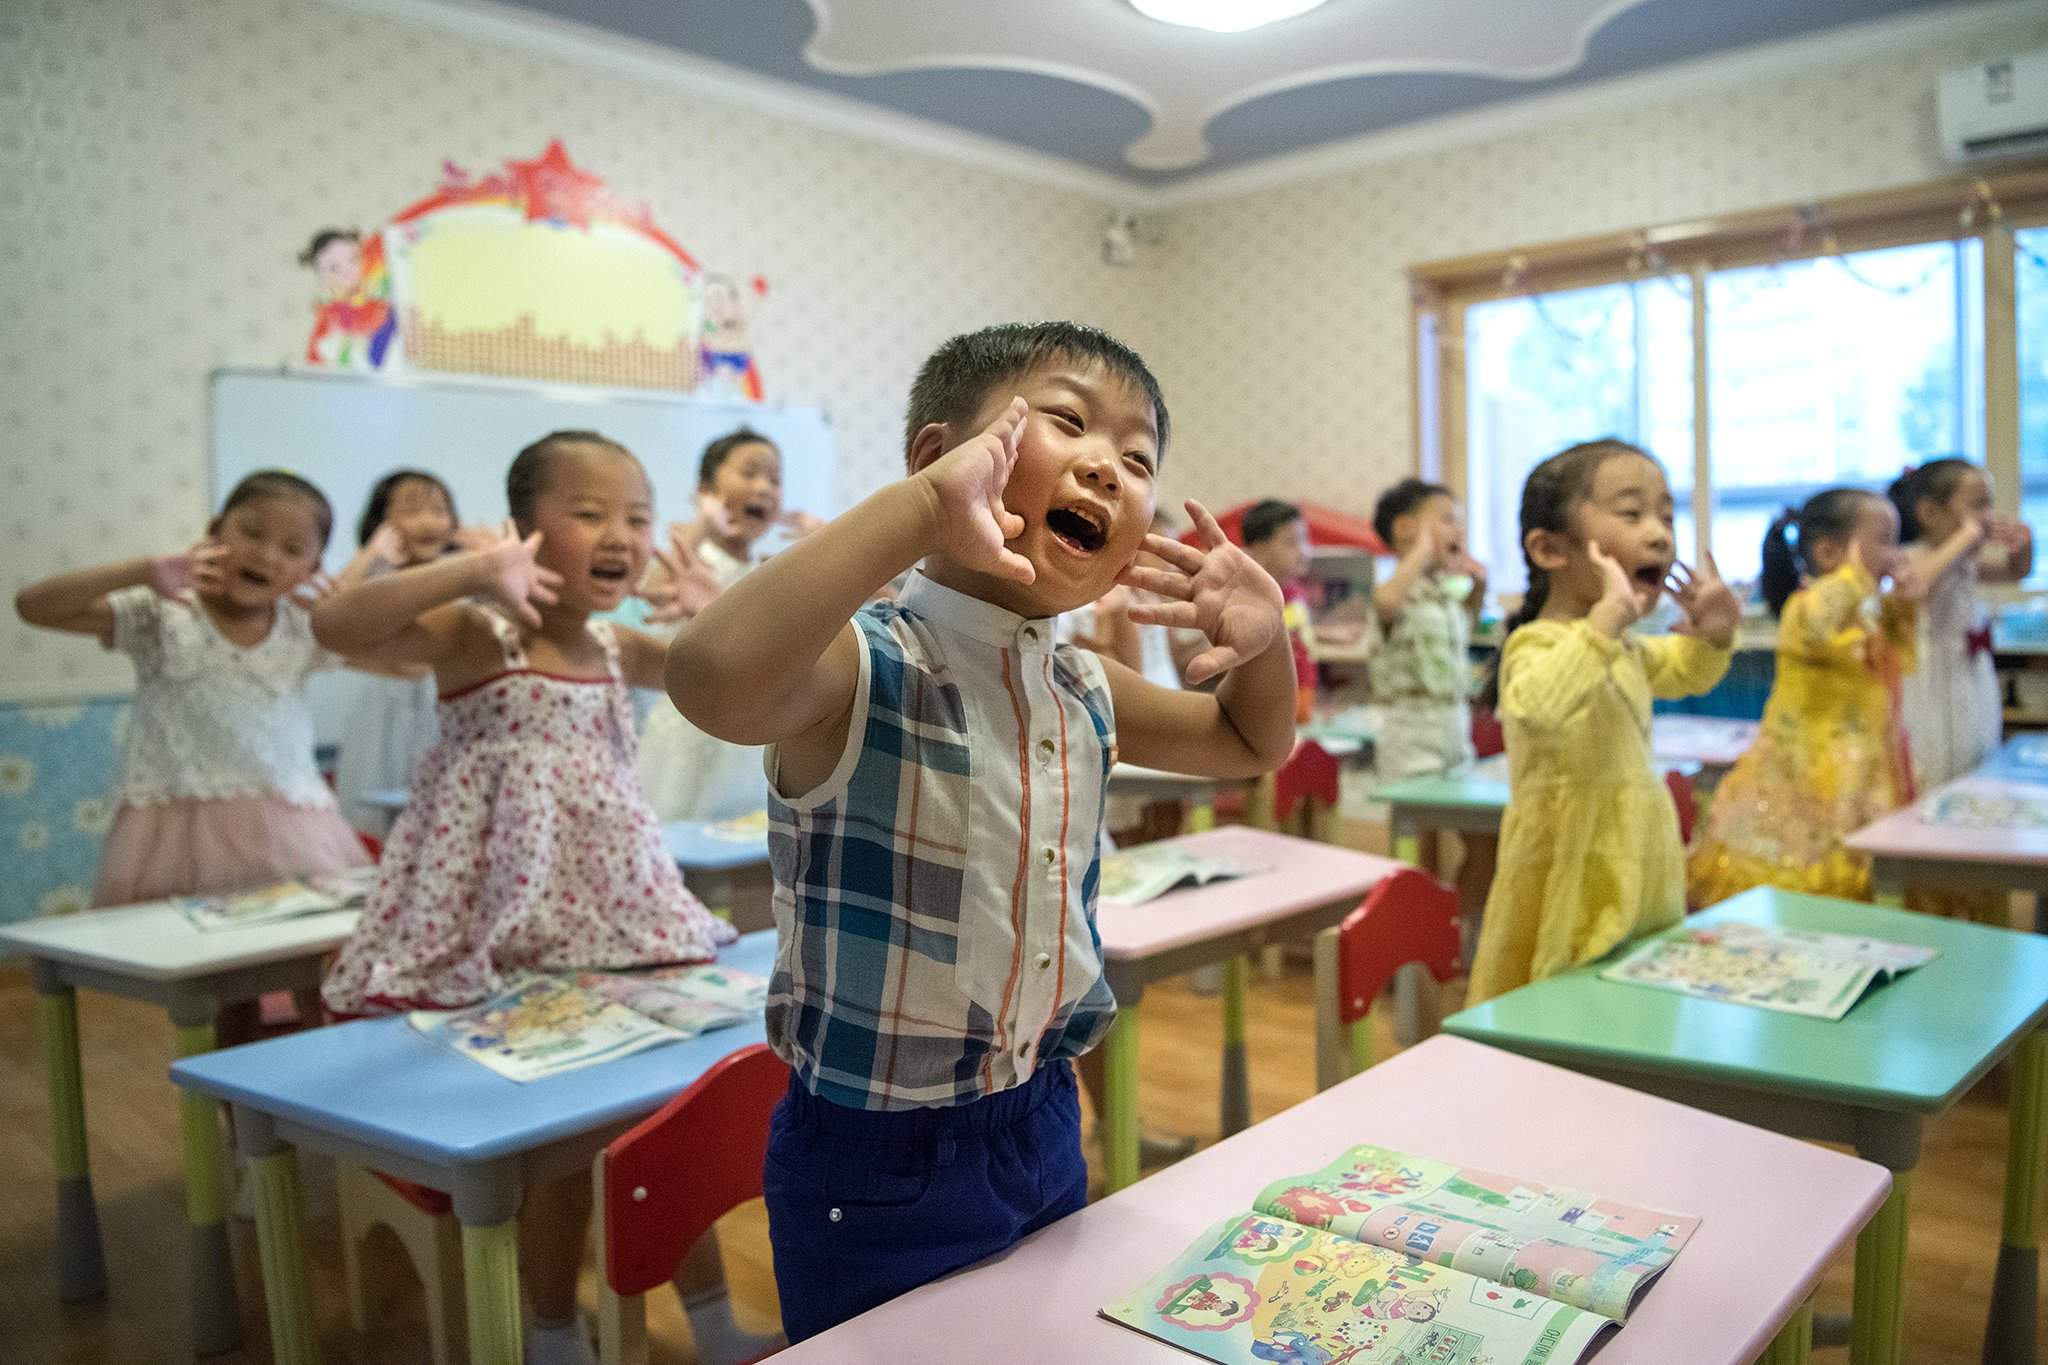 детские сады в китае